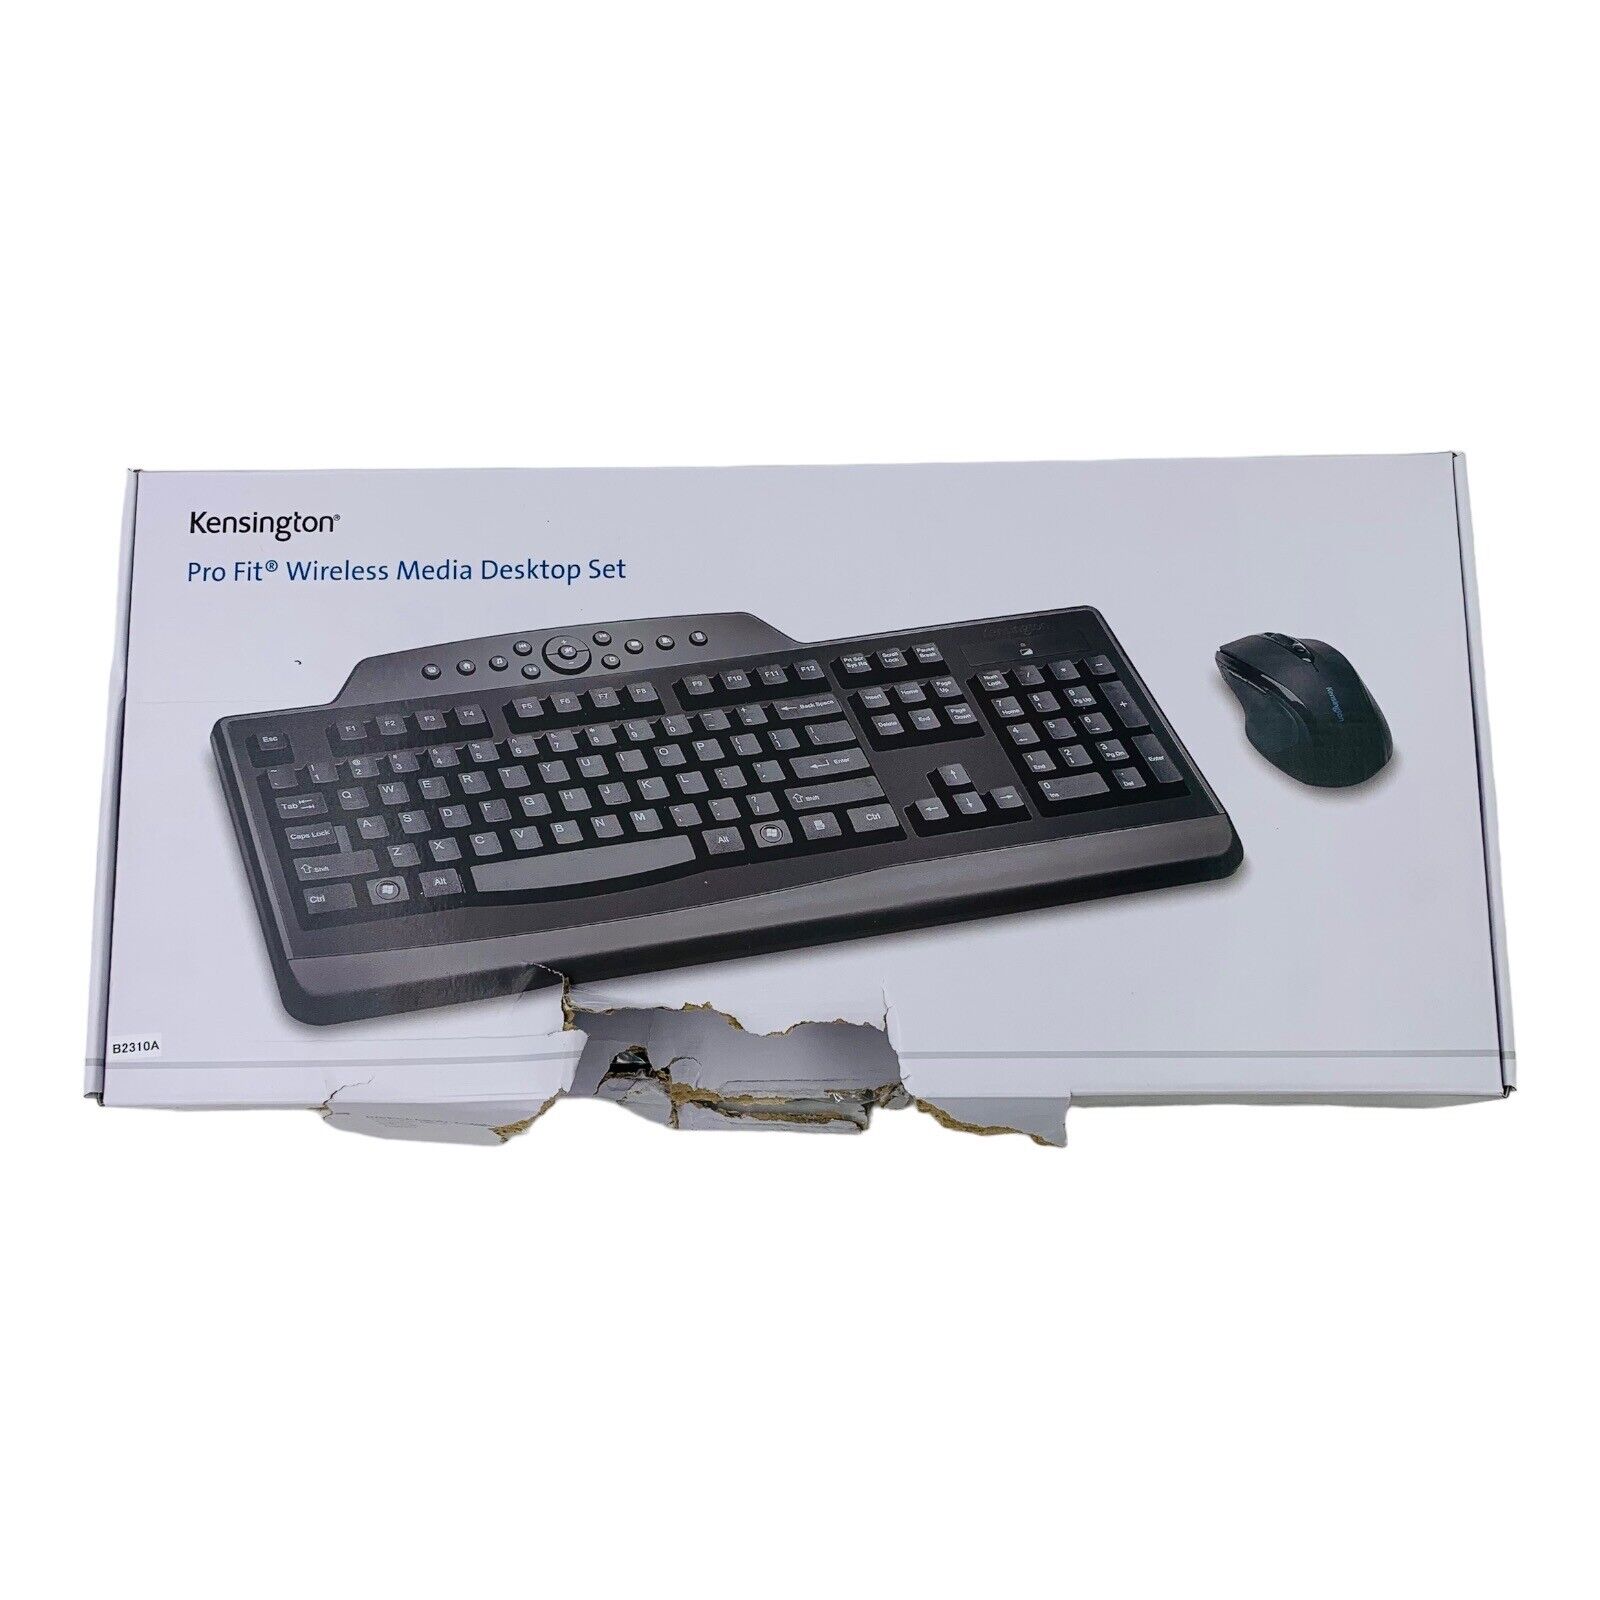 Kensington Mouse & Keyboard Combo Pro Fit Wireless Media Desktop Set Black *READ